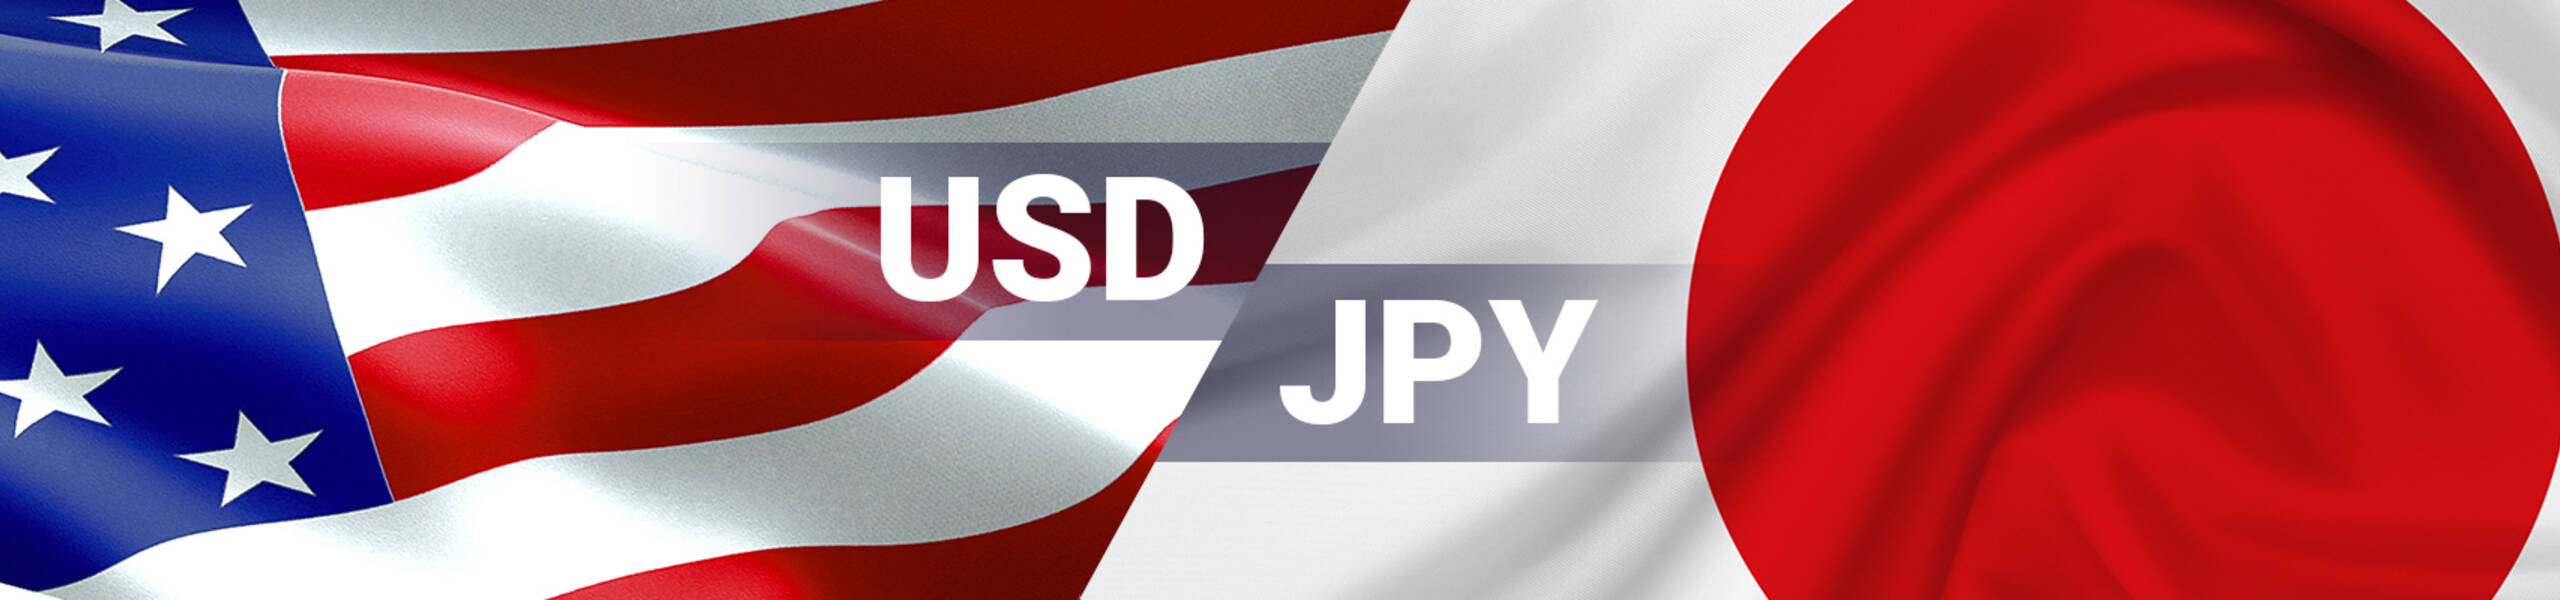 USD/JPY Previsión Semanal Diciembre 10-14.